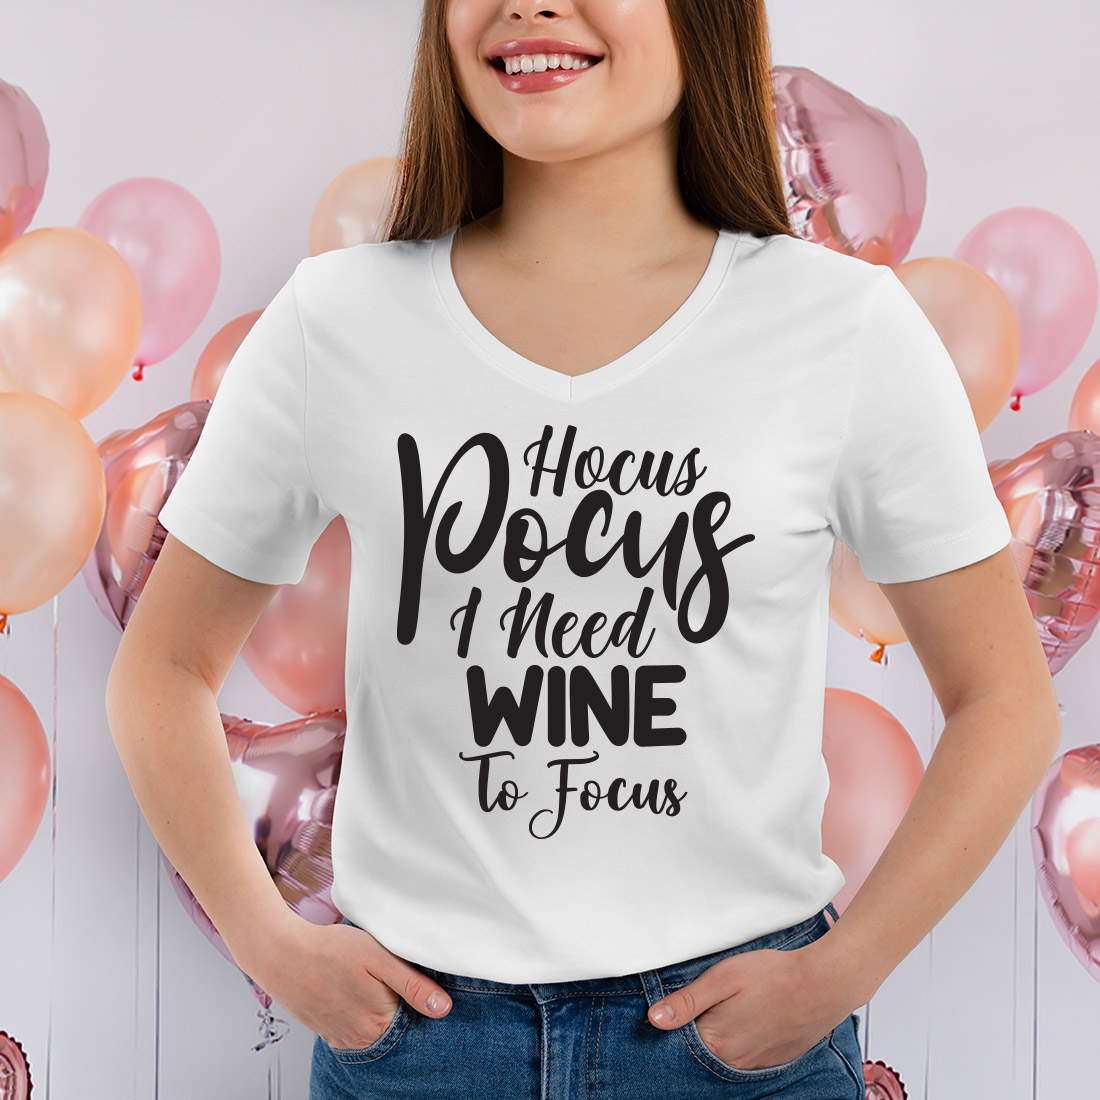 Hocus Pocus I Need Wine To Focus svg cover image.